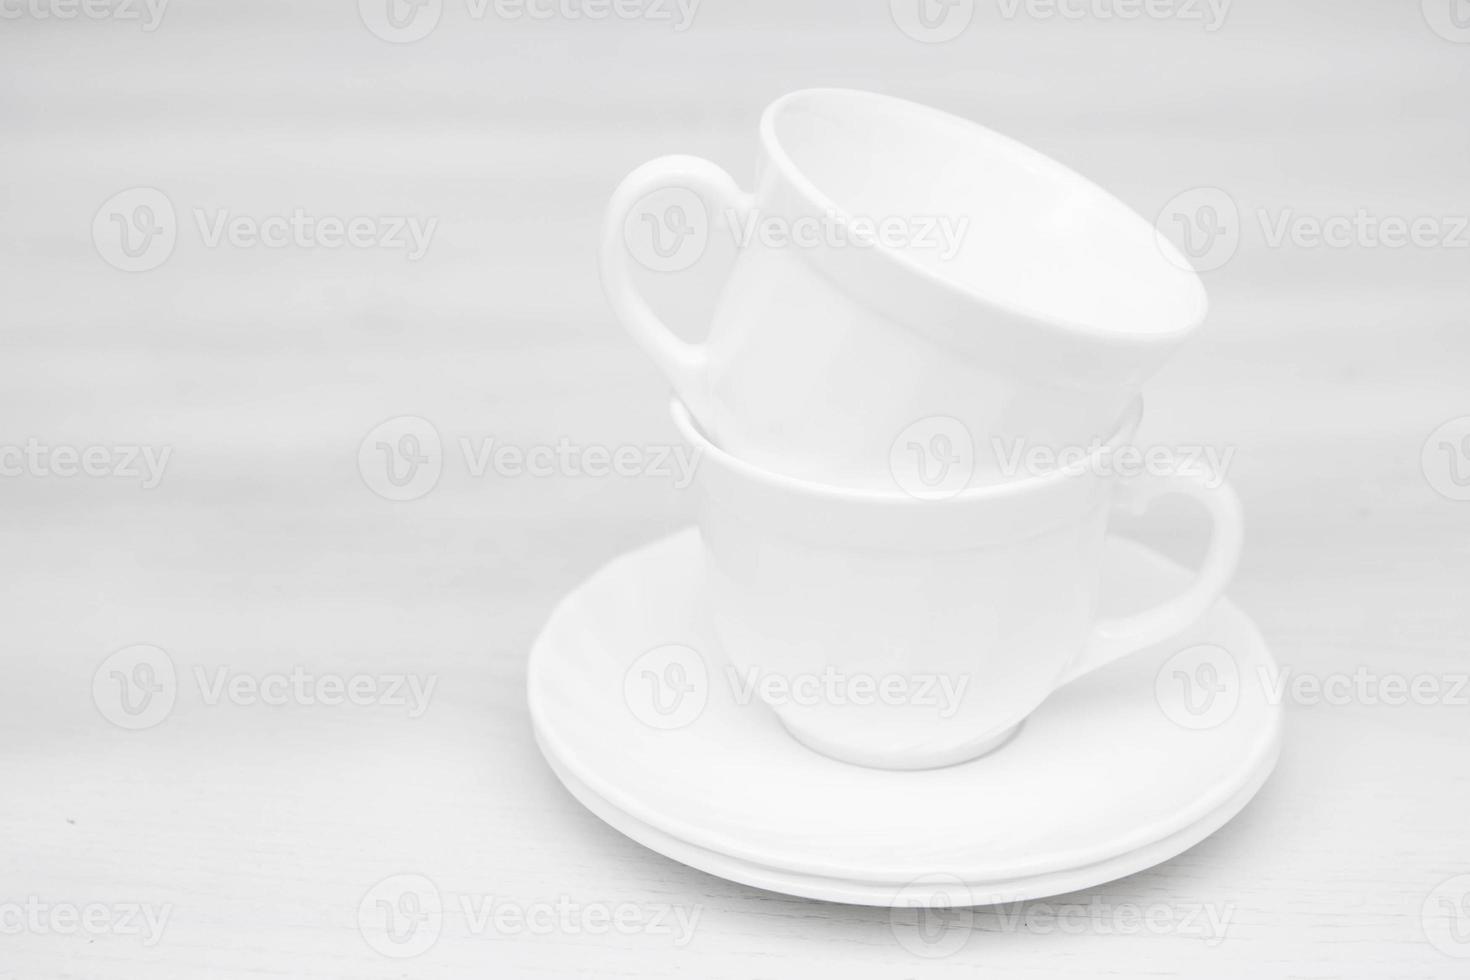 tasses en céramique blanche avec soucoupes sur table blanche photo